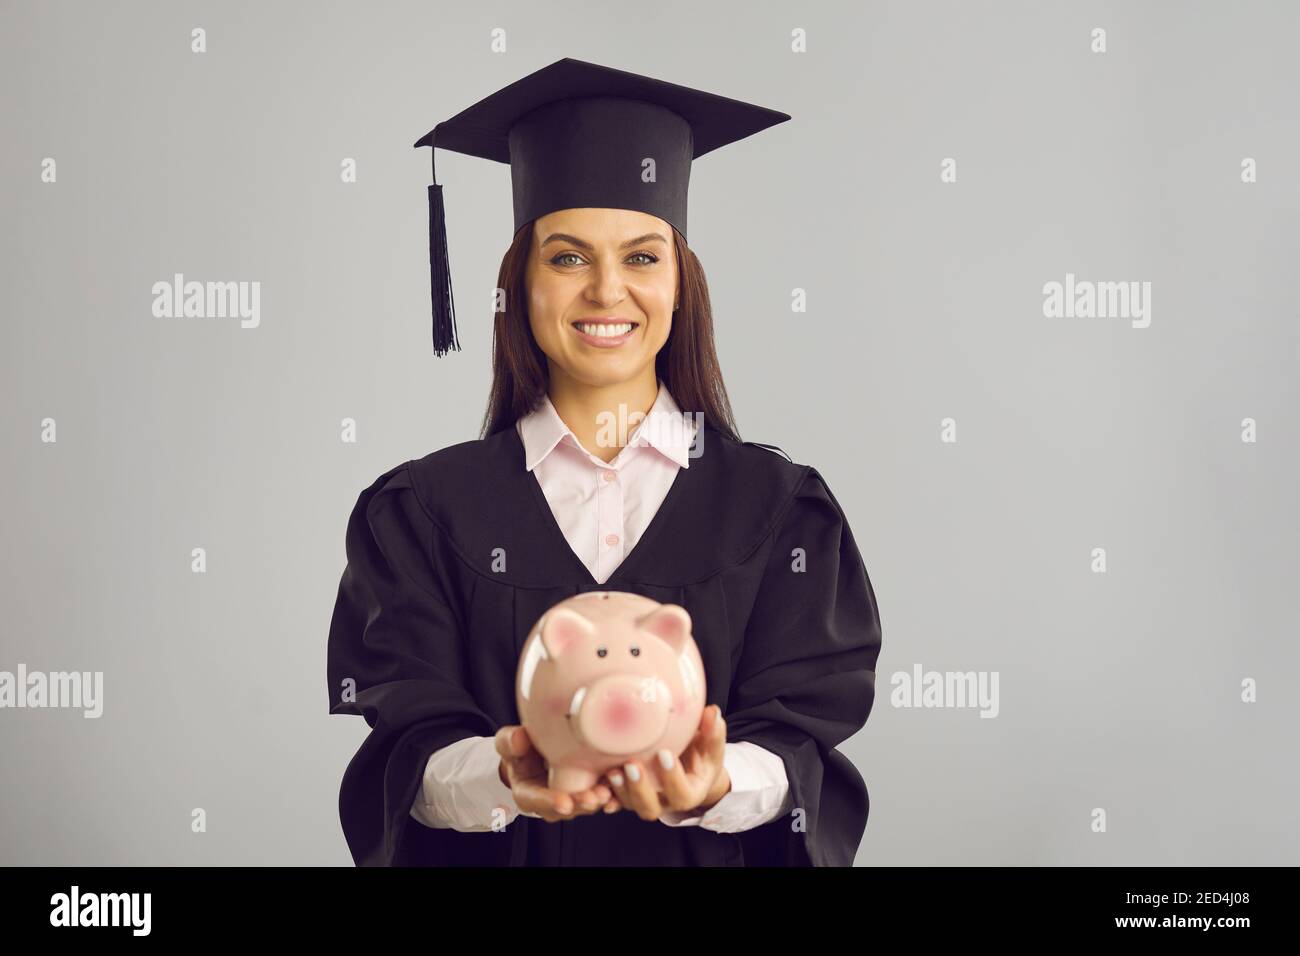 Felice studente in cappellino accademico e abito che detiene banca piggy con denaro risparmiato per l'istruzione Foto Stock